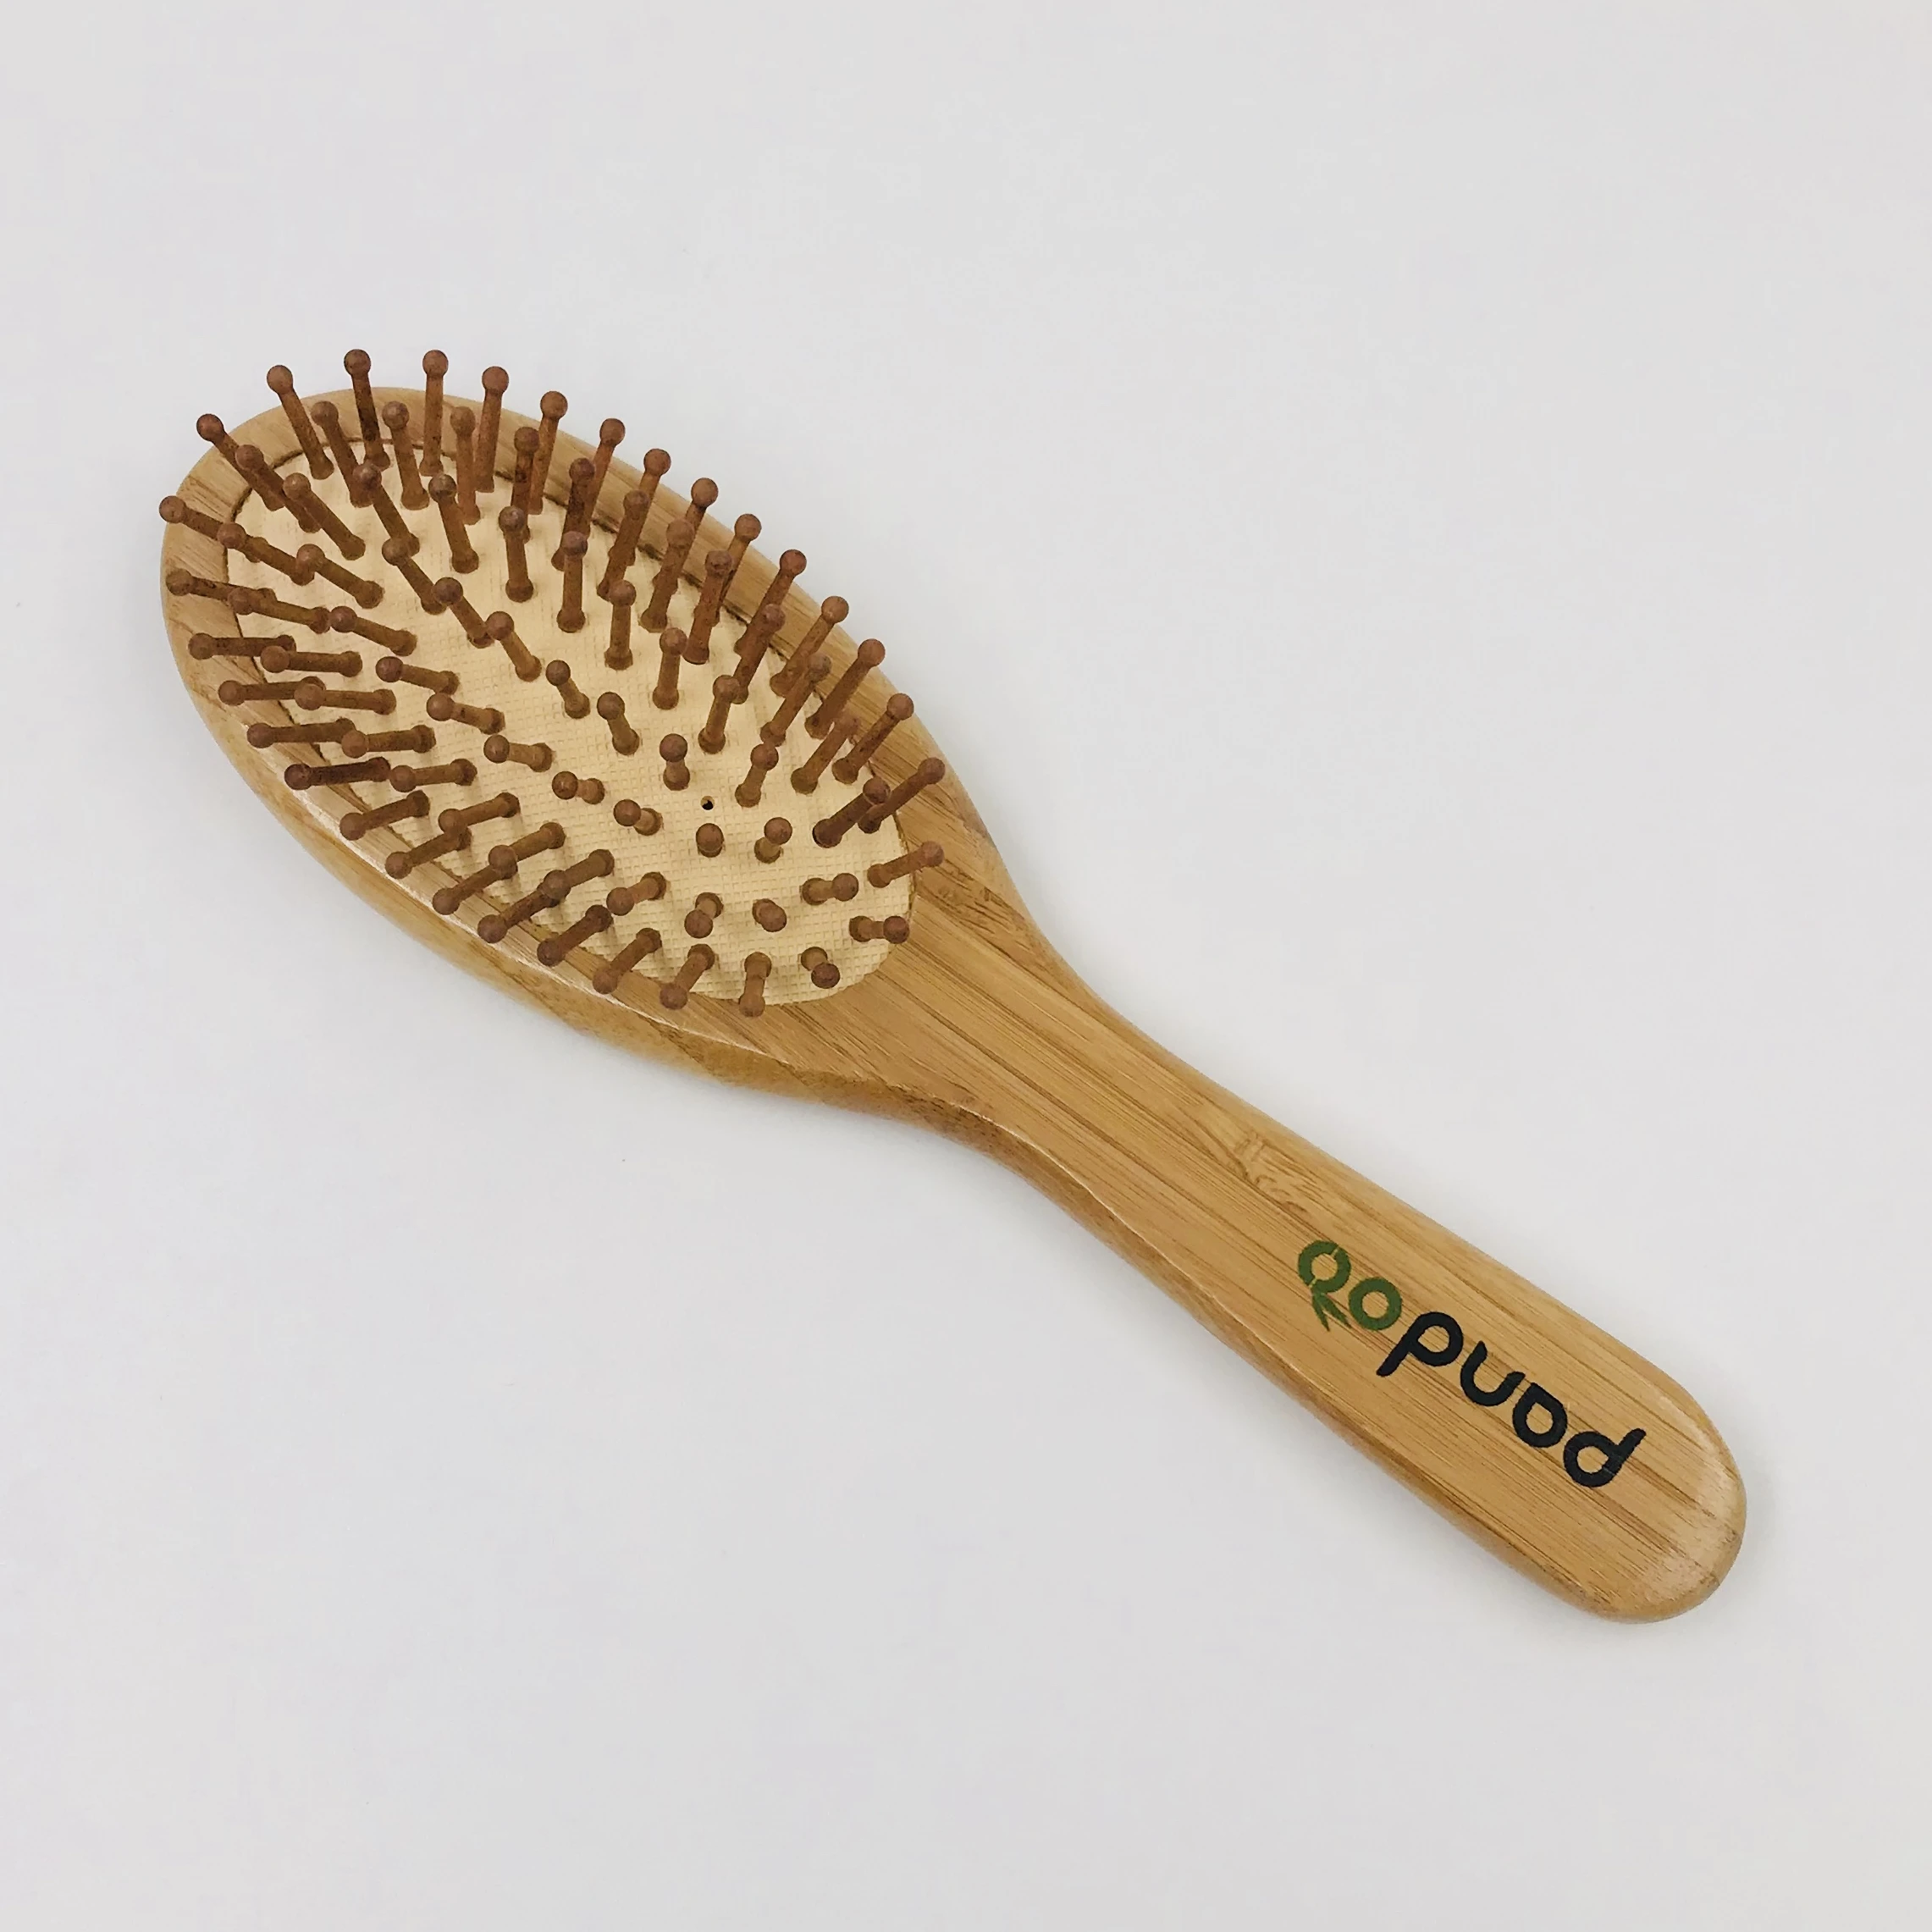 使い捨てホテルアメニティキット、竹の櫛と歯ブラシ、木製のヘアブラシとかみそり - Buy のアメニティ、木製かみそり、竹歯ブラシ Product on  Alibaba.com